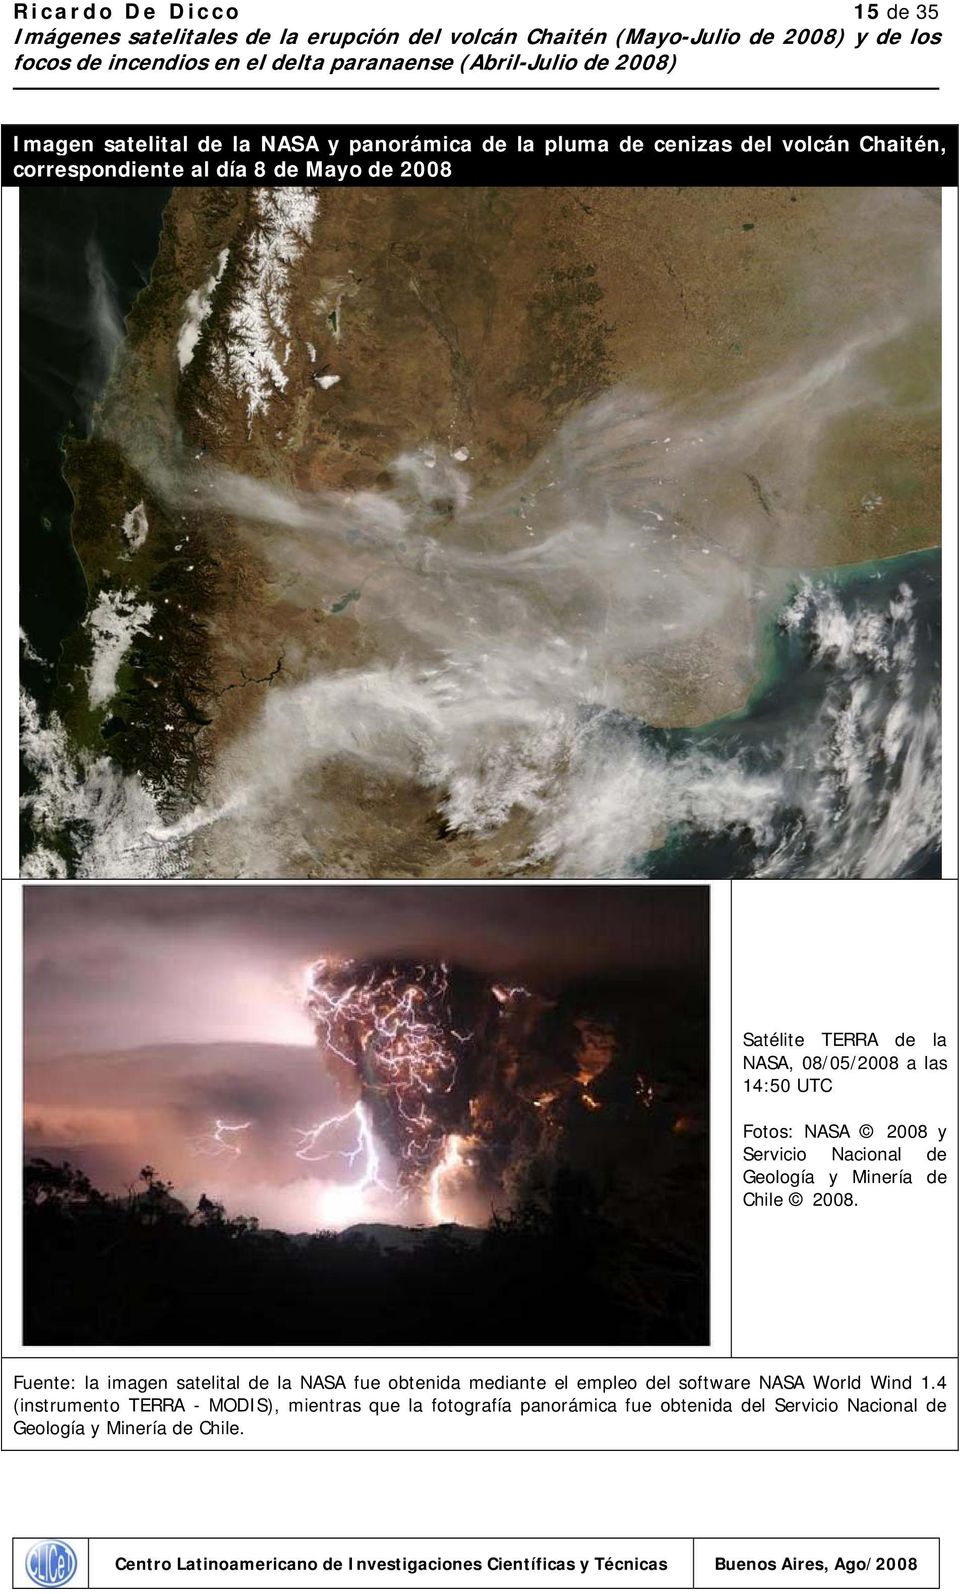 Minería de Chile 2008. Fuente: la imagen satelital de la NASA fue obtenida mediante el empleo del software NASA World Wind 1.